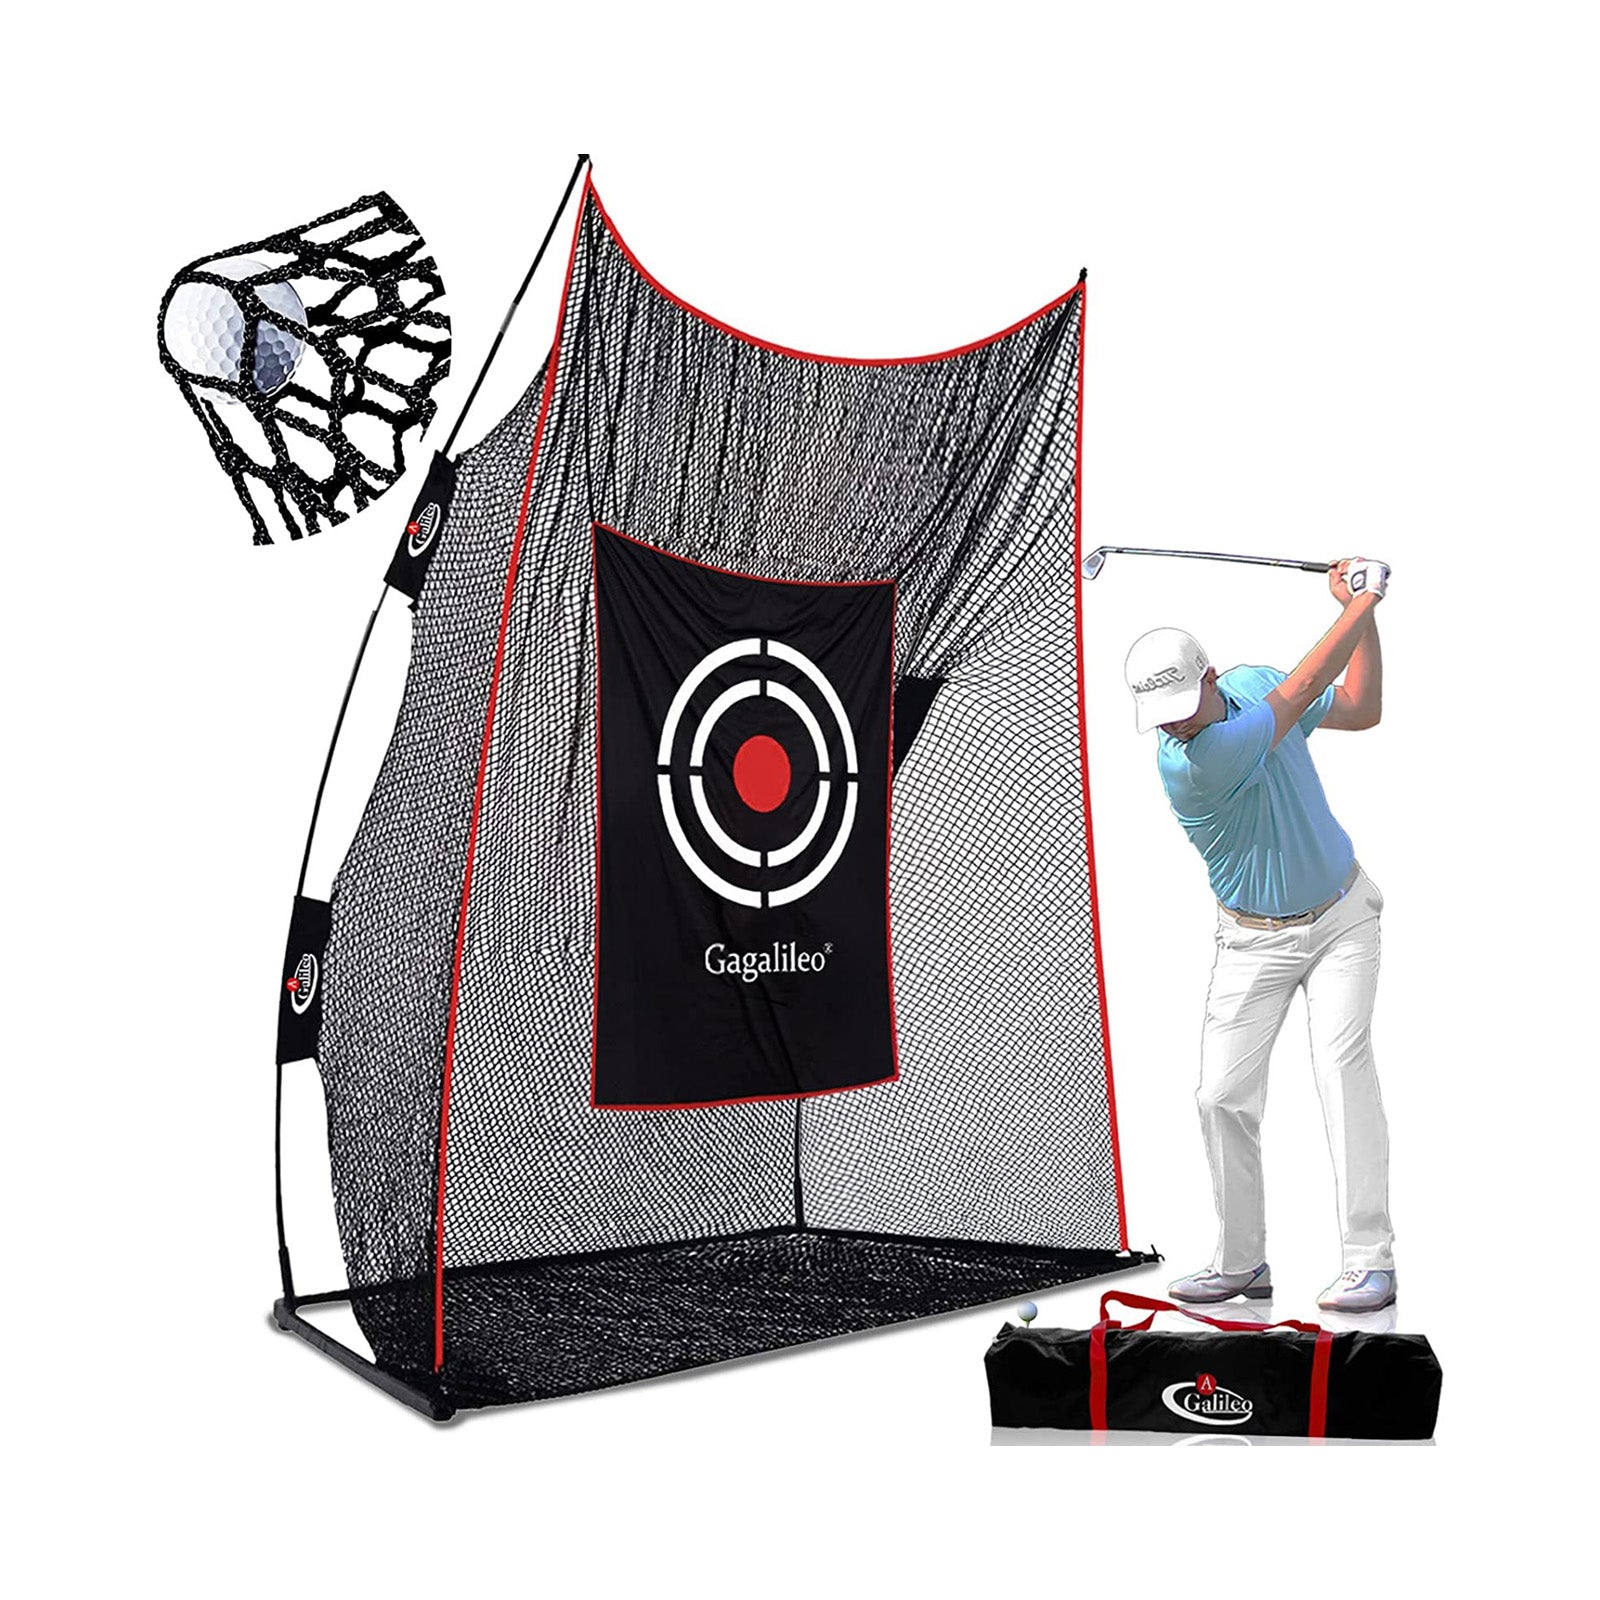 Galileo 12X10X4 Golf Practice Backyard Nets| Heavy Duty Golf Net